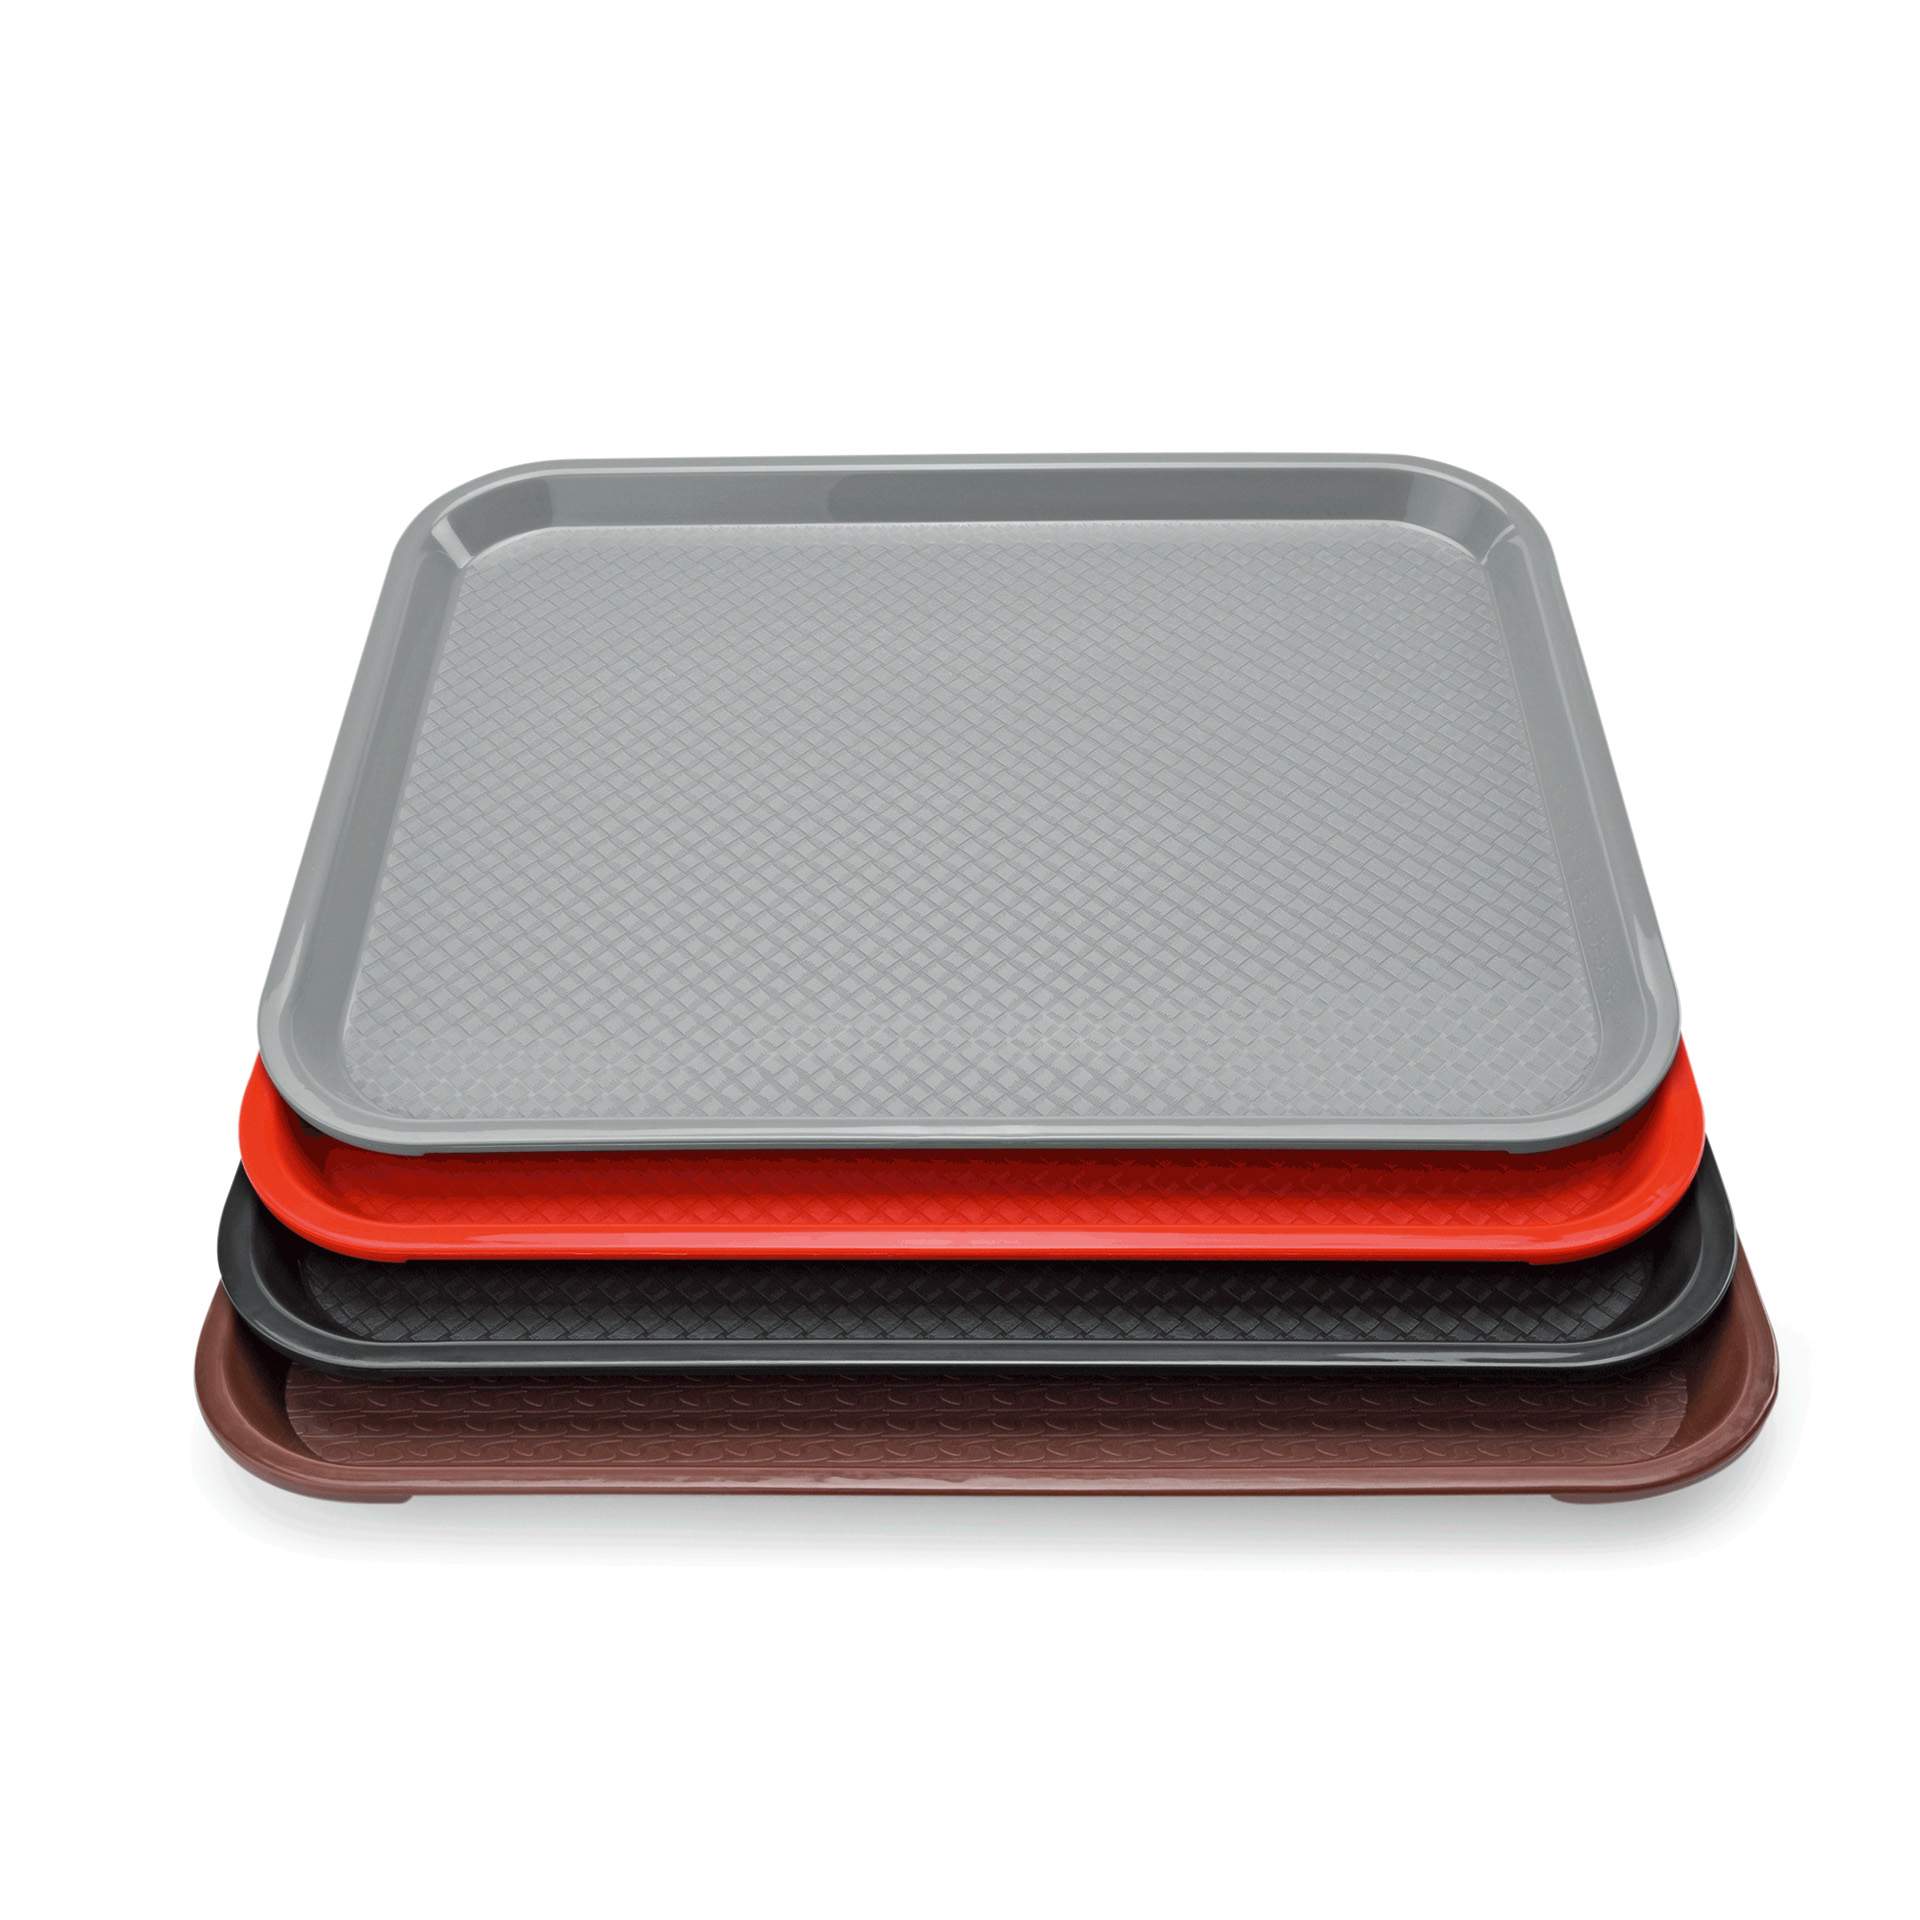 Tablett - Stapelnocken - Serie 9520 - lichtgrau - Abm. 41,4 x 30,4 cm - Polypropylen - 9520414-A